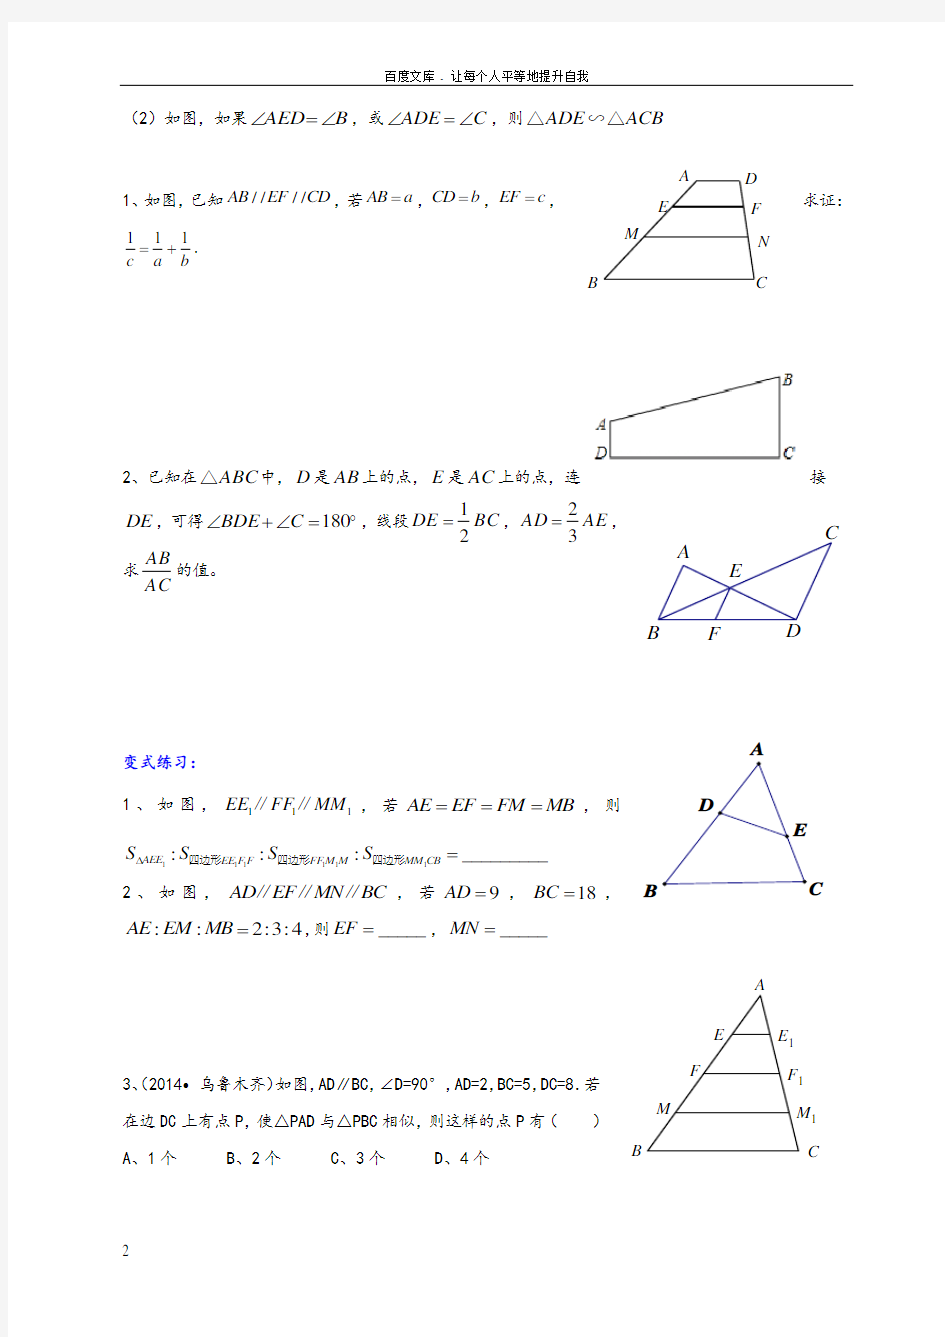 初三数学相似三角形常见模型(供参考)